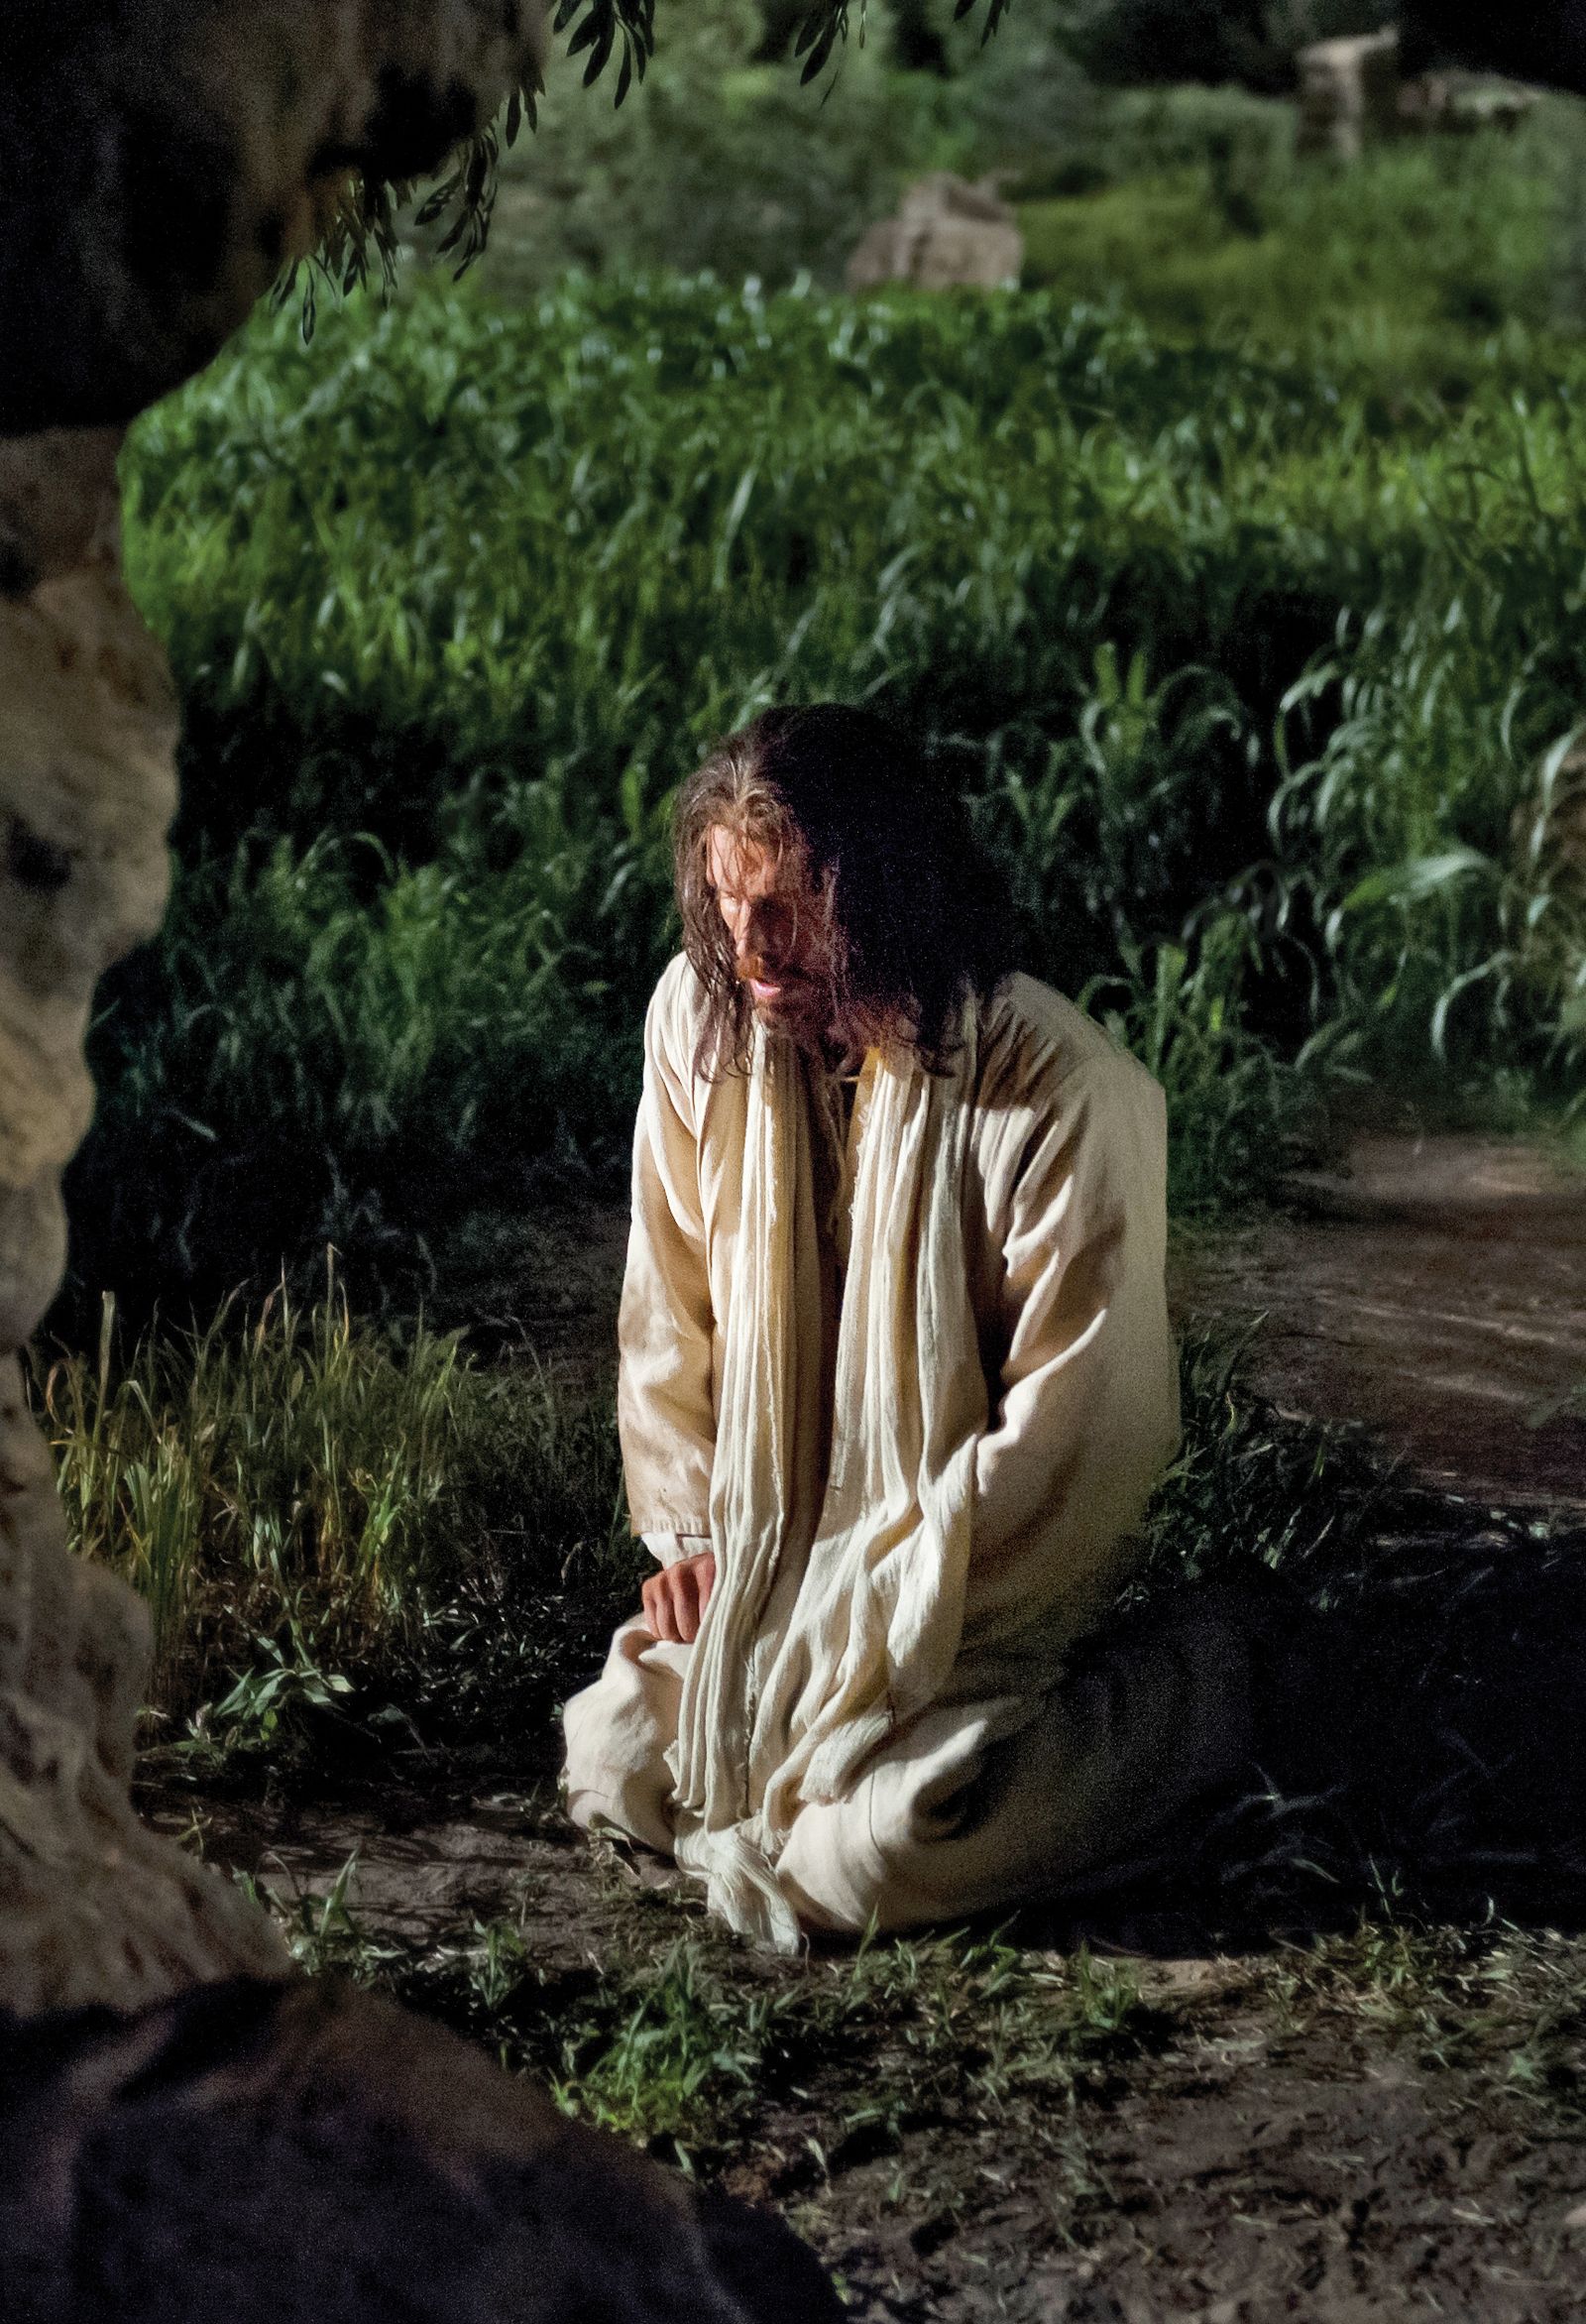 Christ kneeling in Gethsemane to pray.